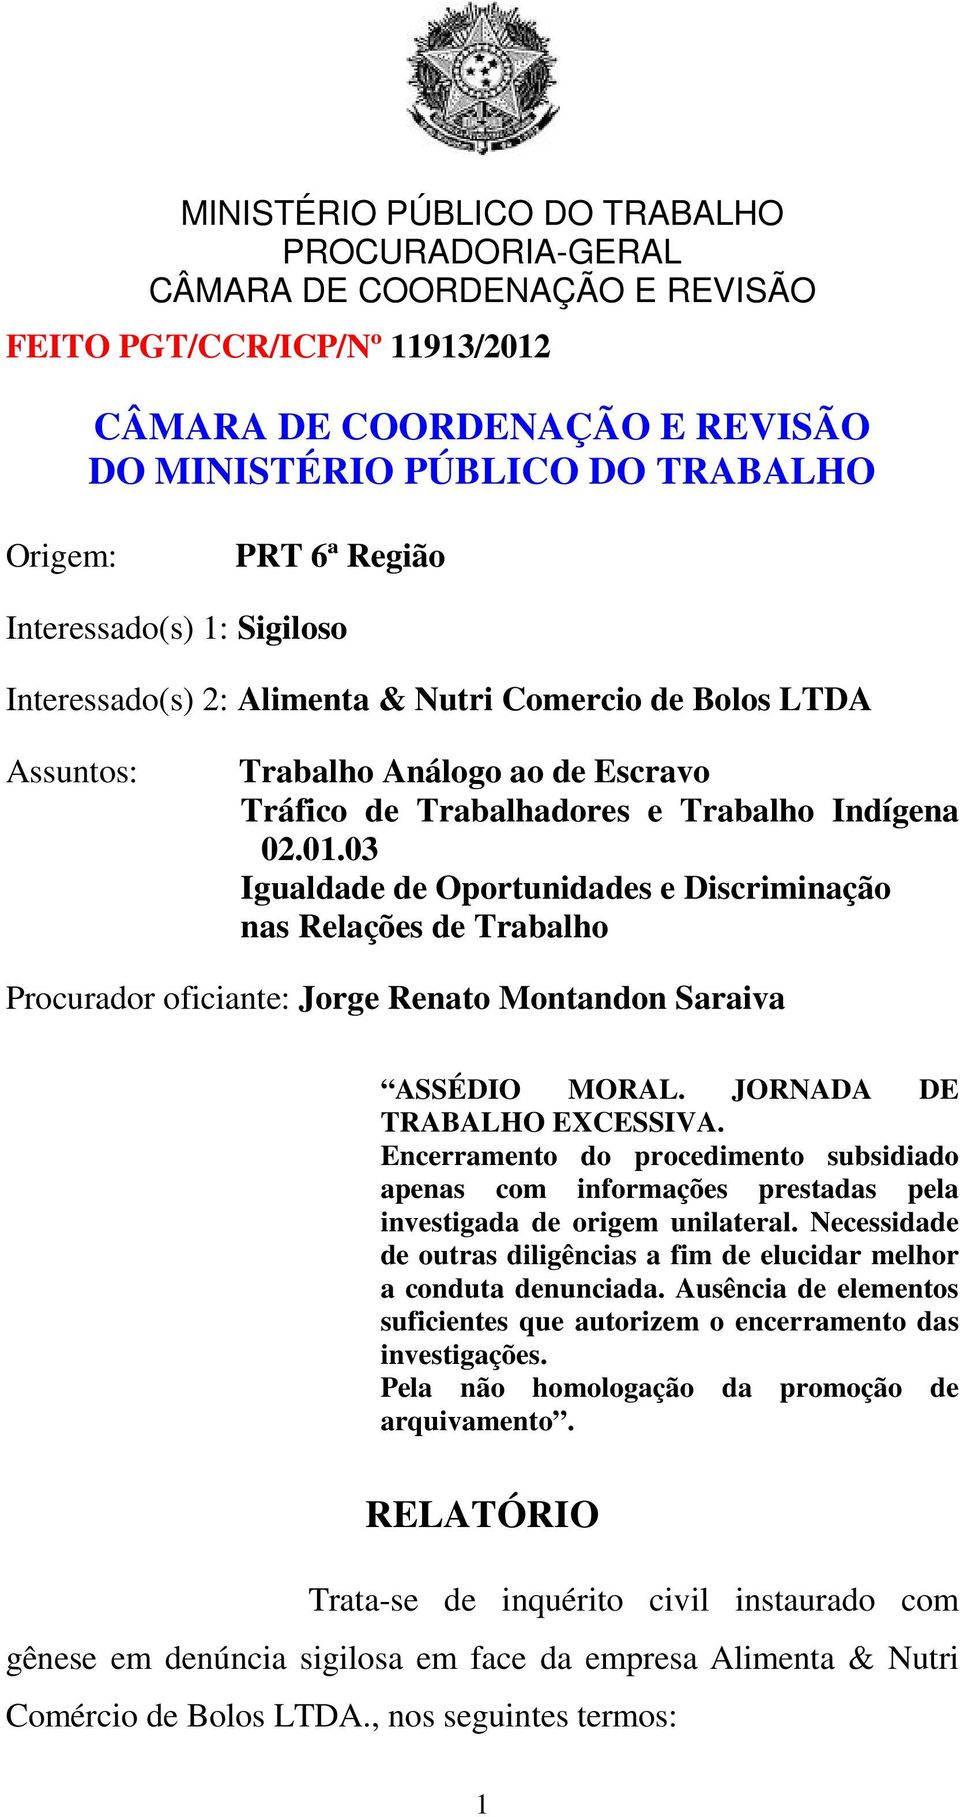 JORNADA DE TRABALHO EXCESSIVA. Encerramento do procedimento subsidiado apenas com informações prestadas pela investigada de origem unilateral.